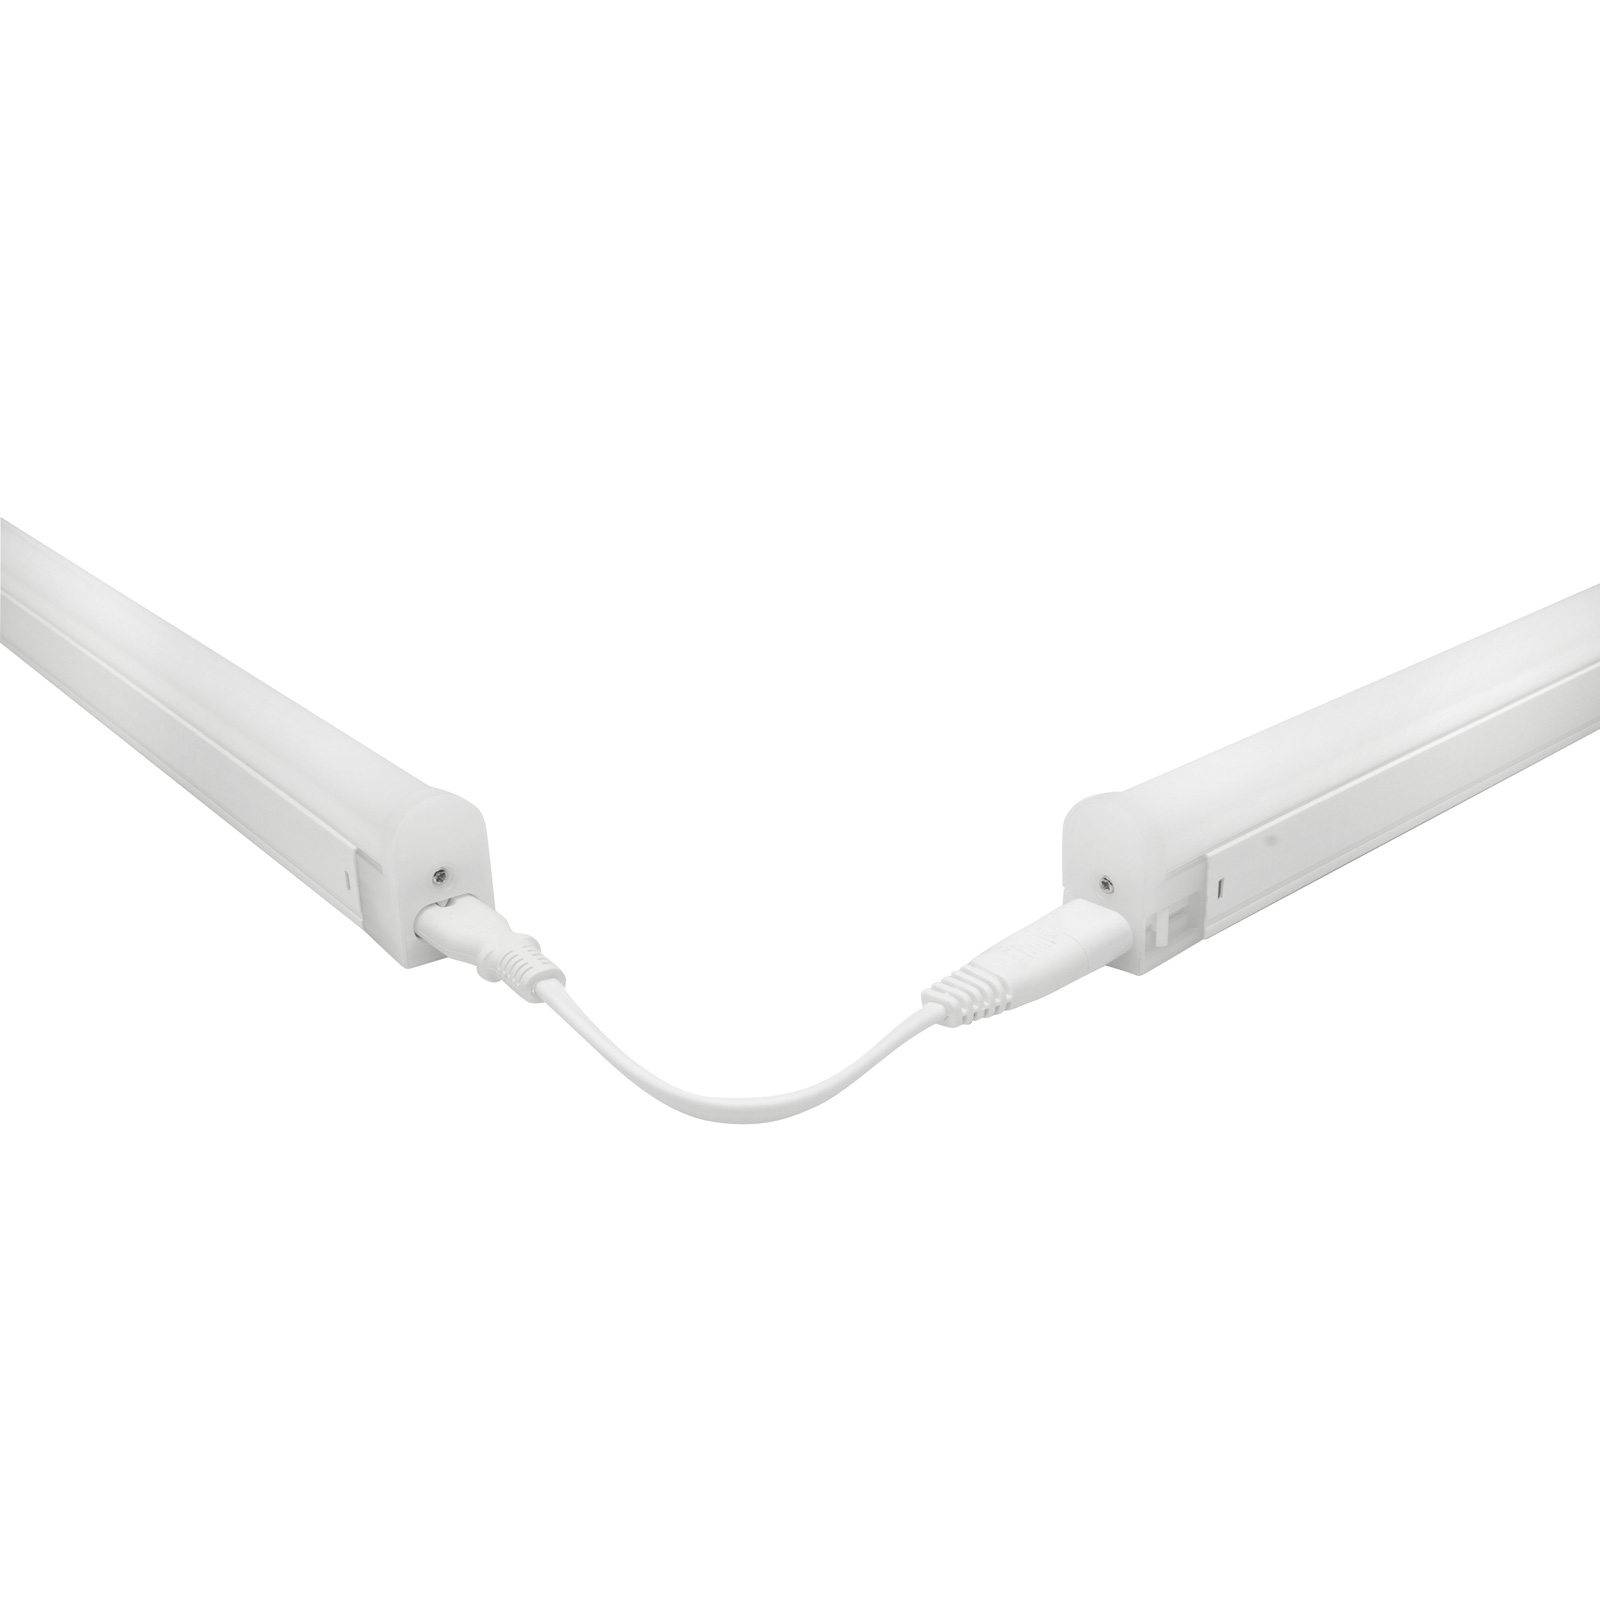 Aansluitkabel voor Pino LED meubelverlichting